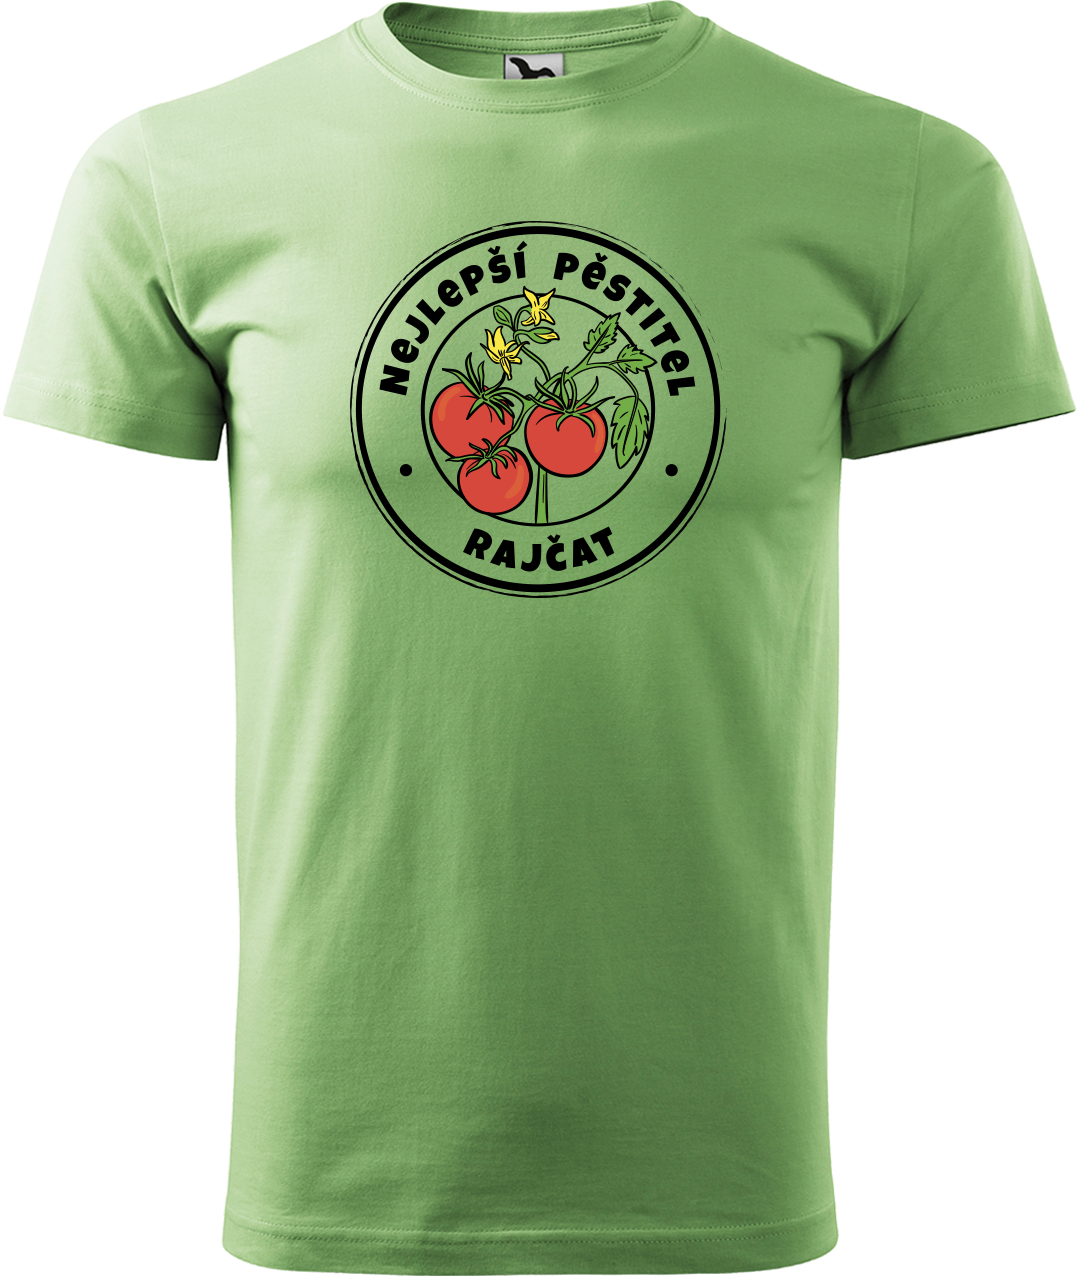 Tričko pro zahradníka - Nejlepší pěstitel rajčat Velikost: M, Barva: Trávově zelená (39)